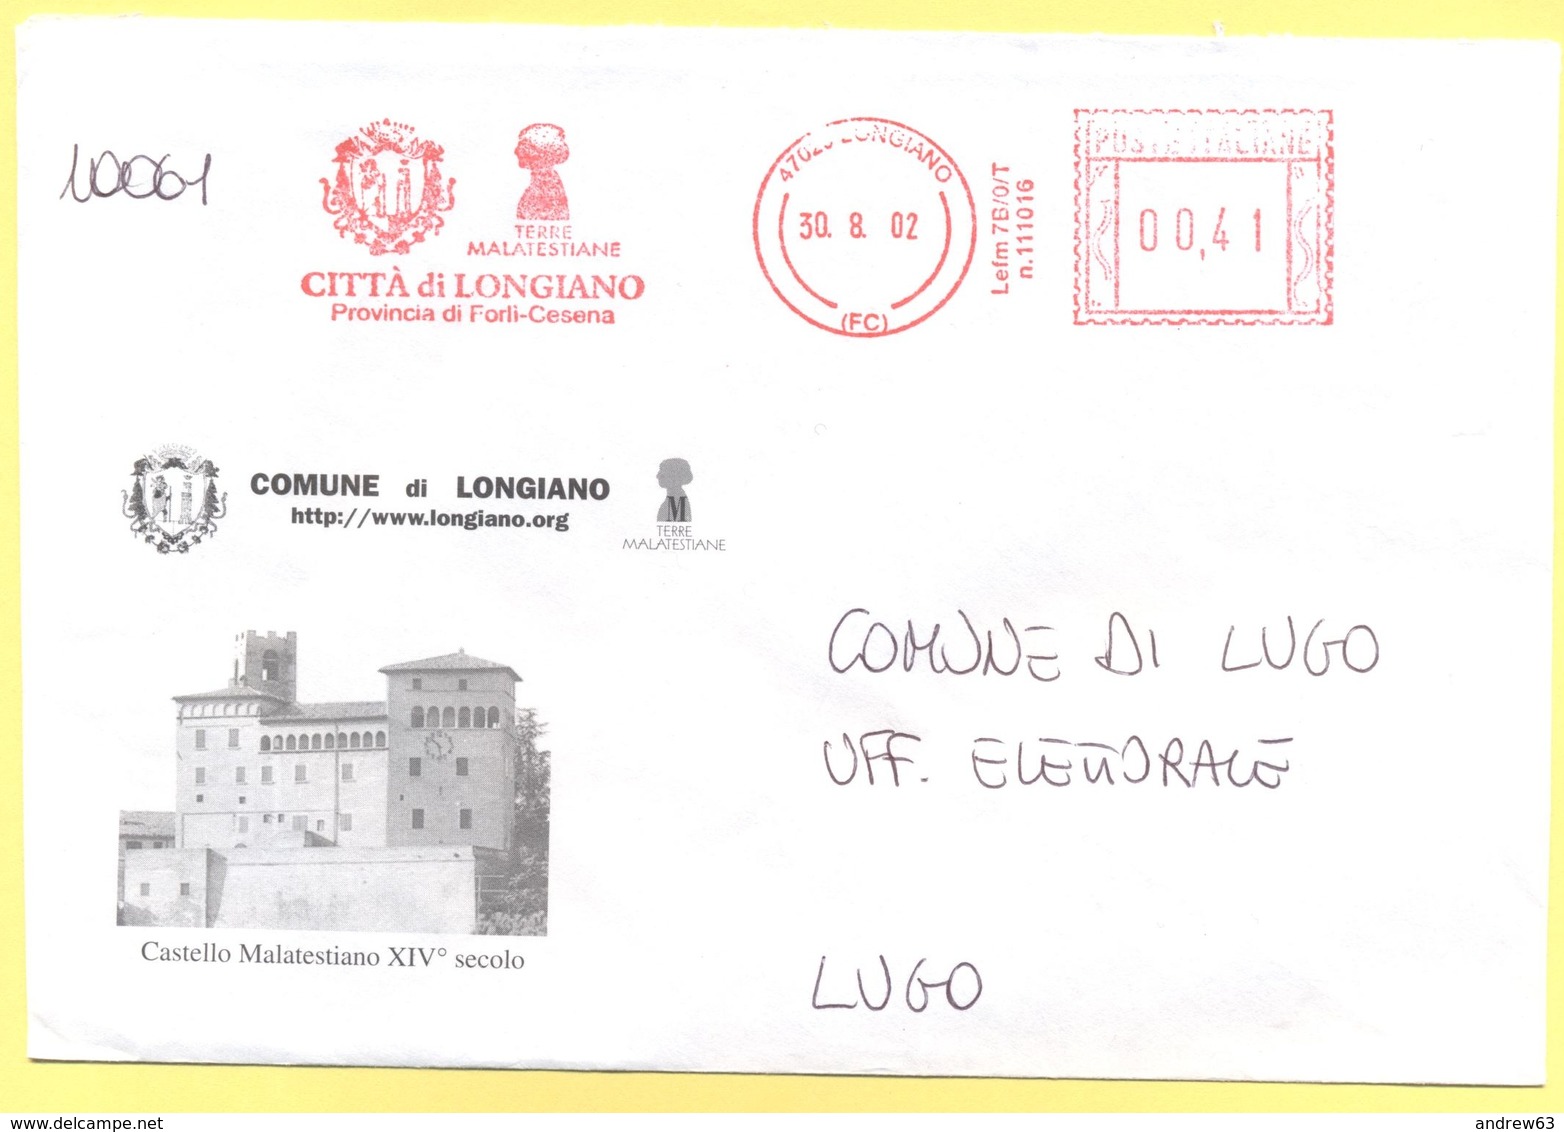 ITALIA - ITALY - ITALIE - 2002 - 00,41 EMA, Red Cancel - Comune Di Longiano - Viaggiata Da Longiano Per Lugo - Macchine Per Obliterare (EMA)